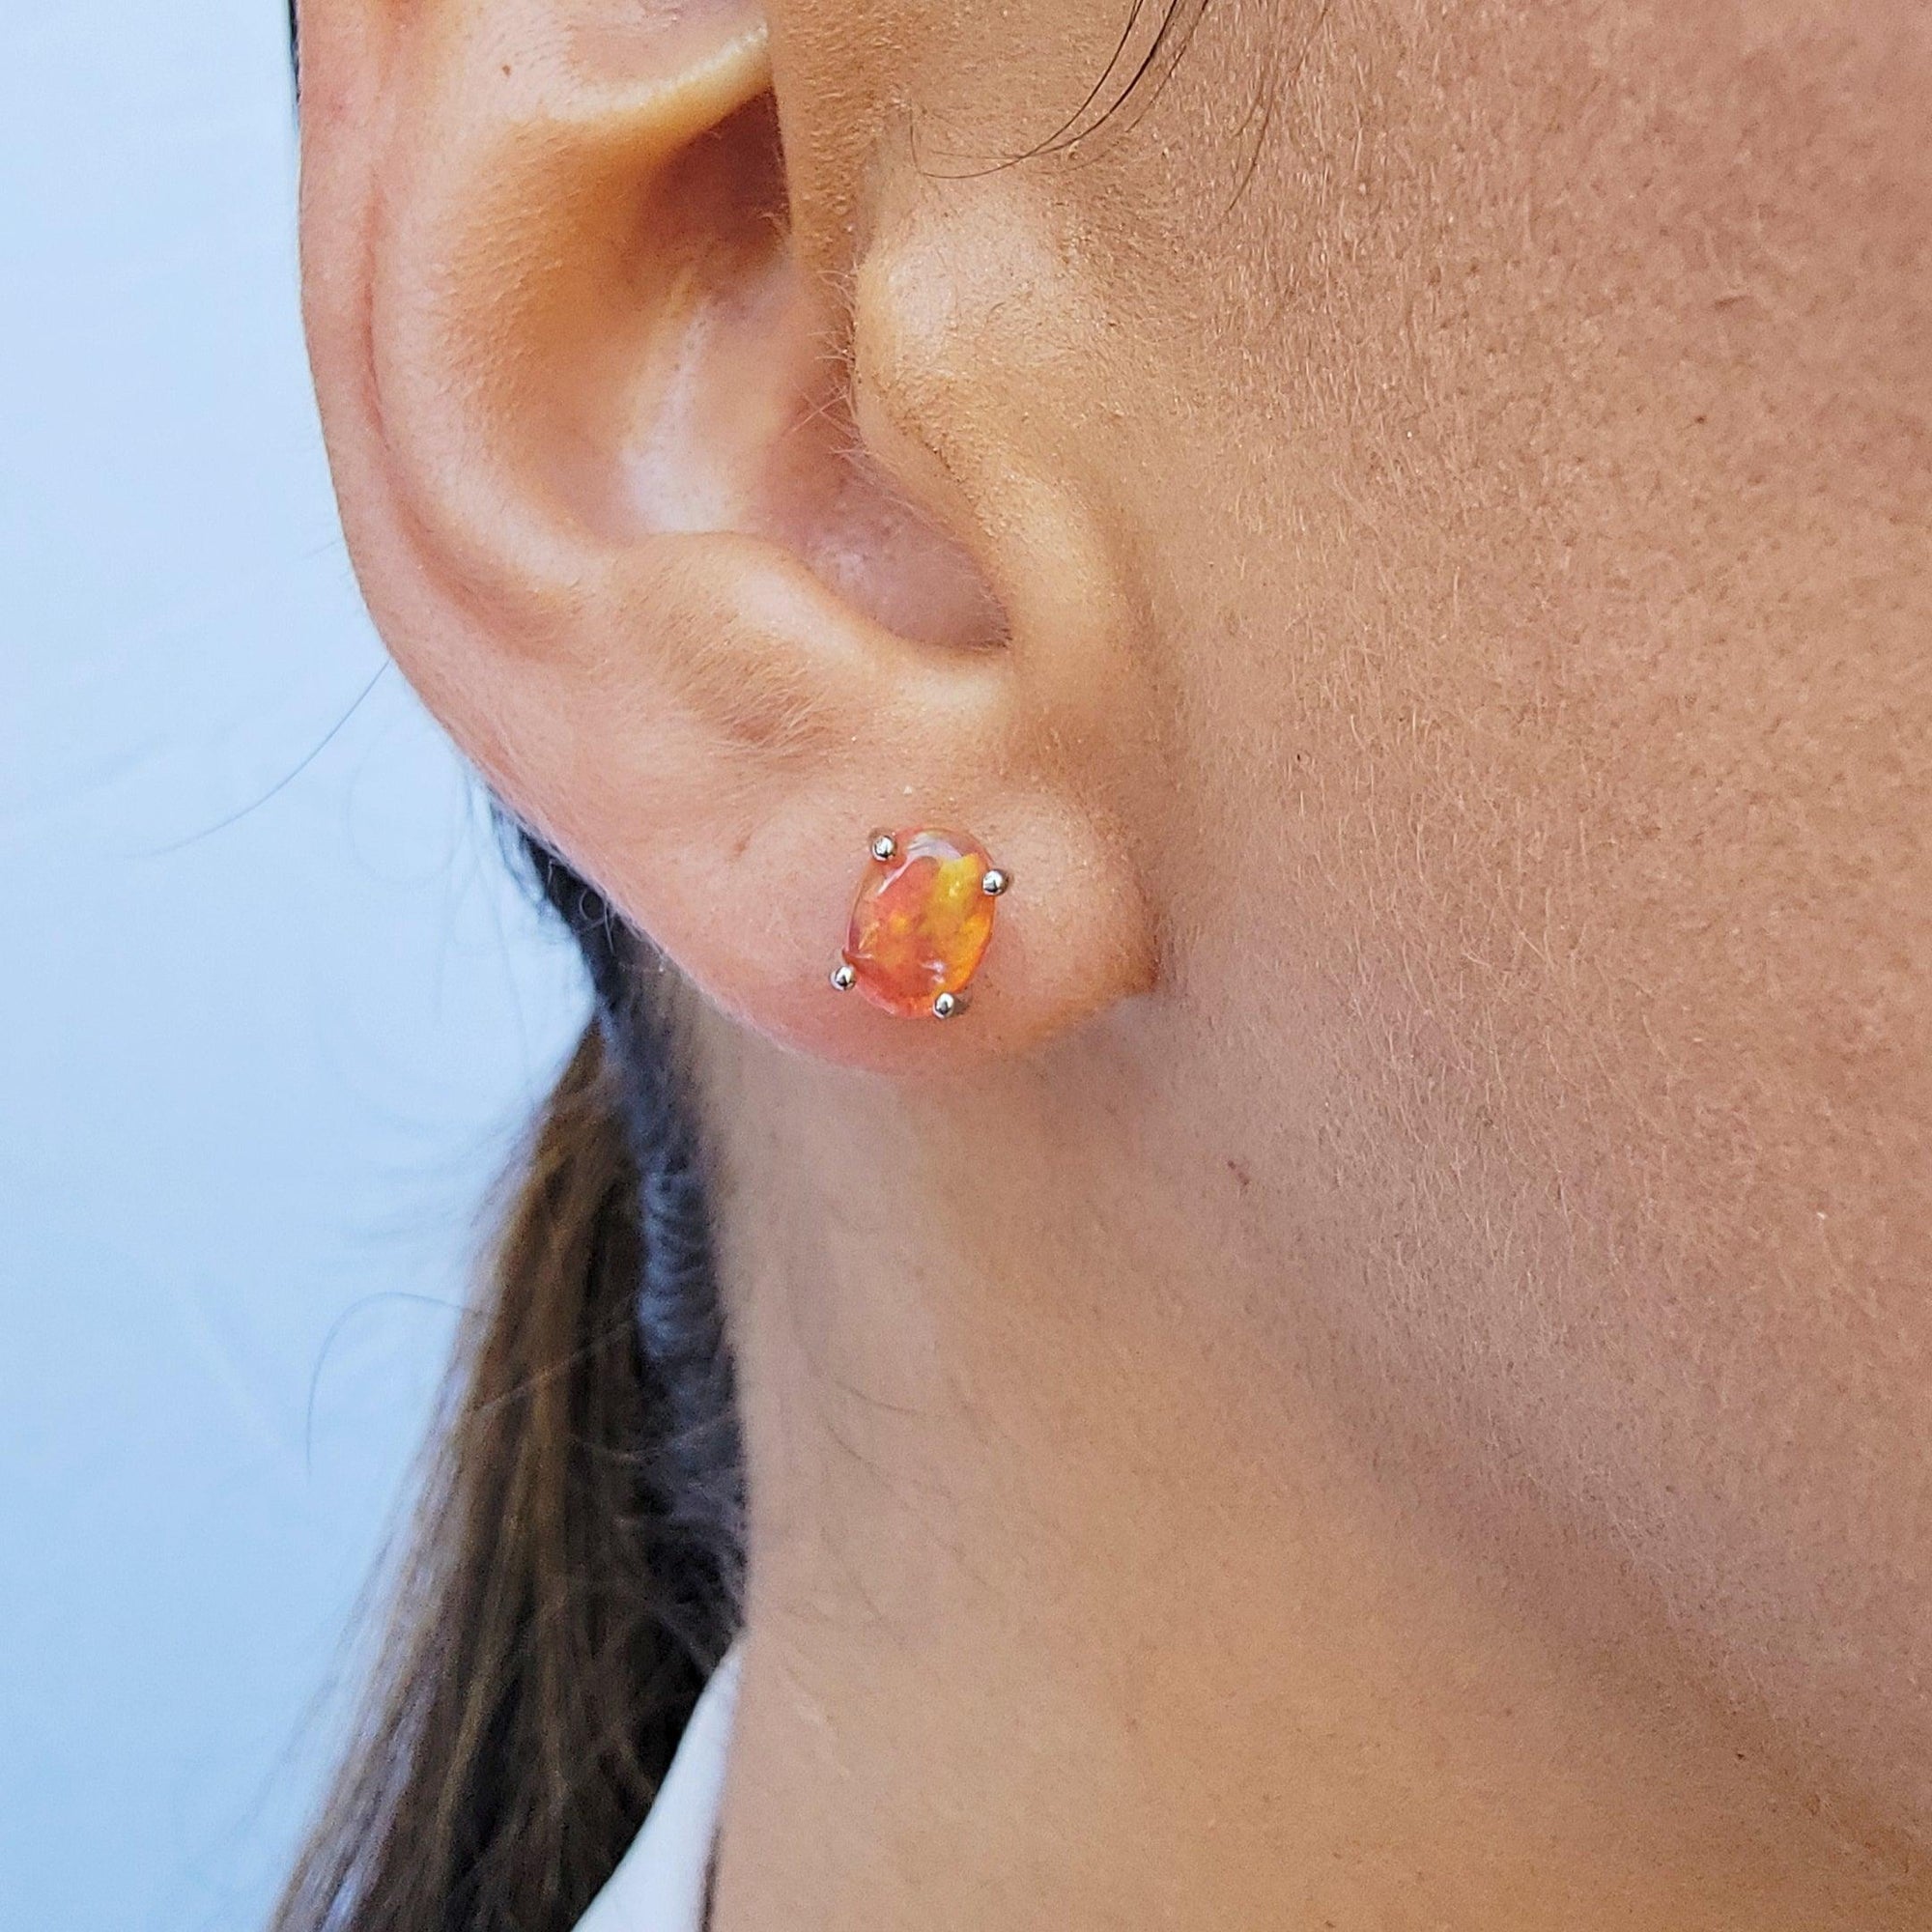 Oval Orange Opal Heart Earrings - Uniquelan Jewelry